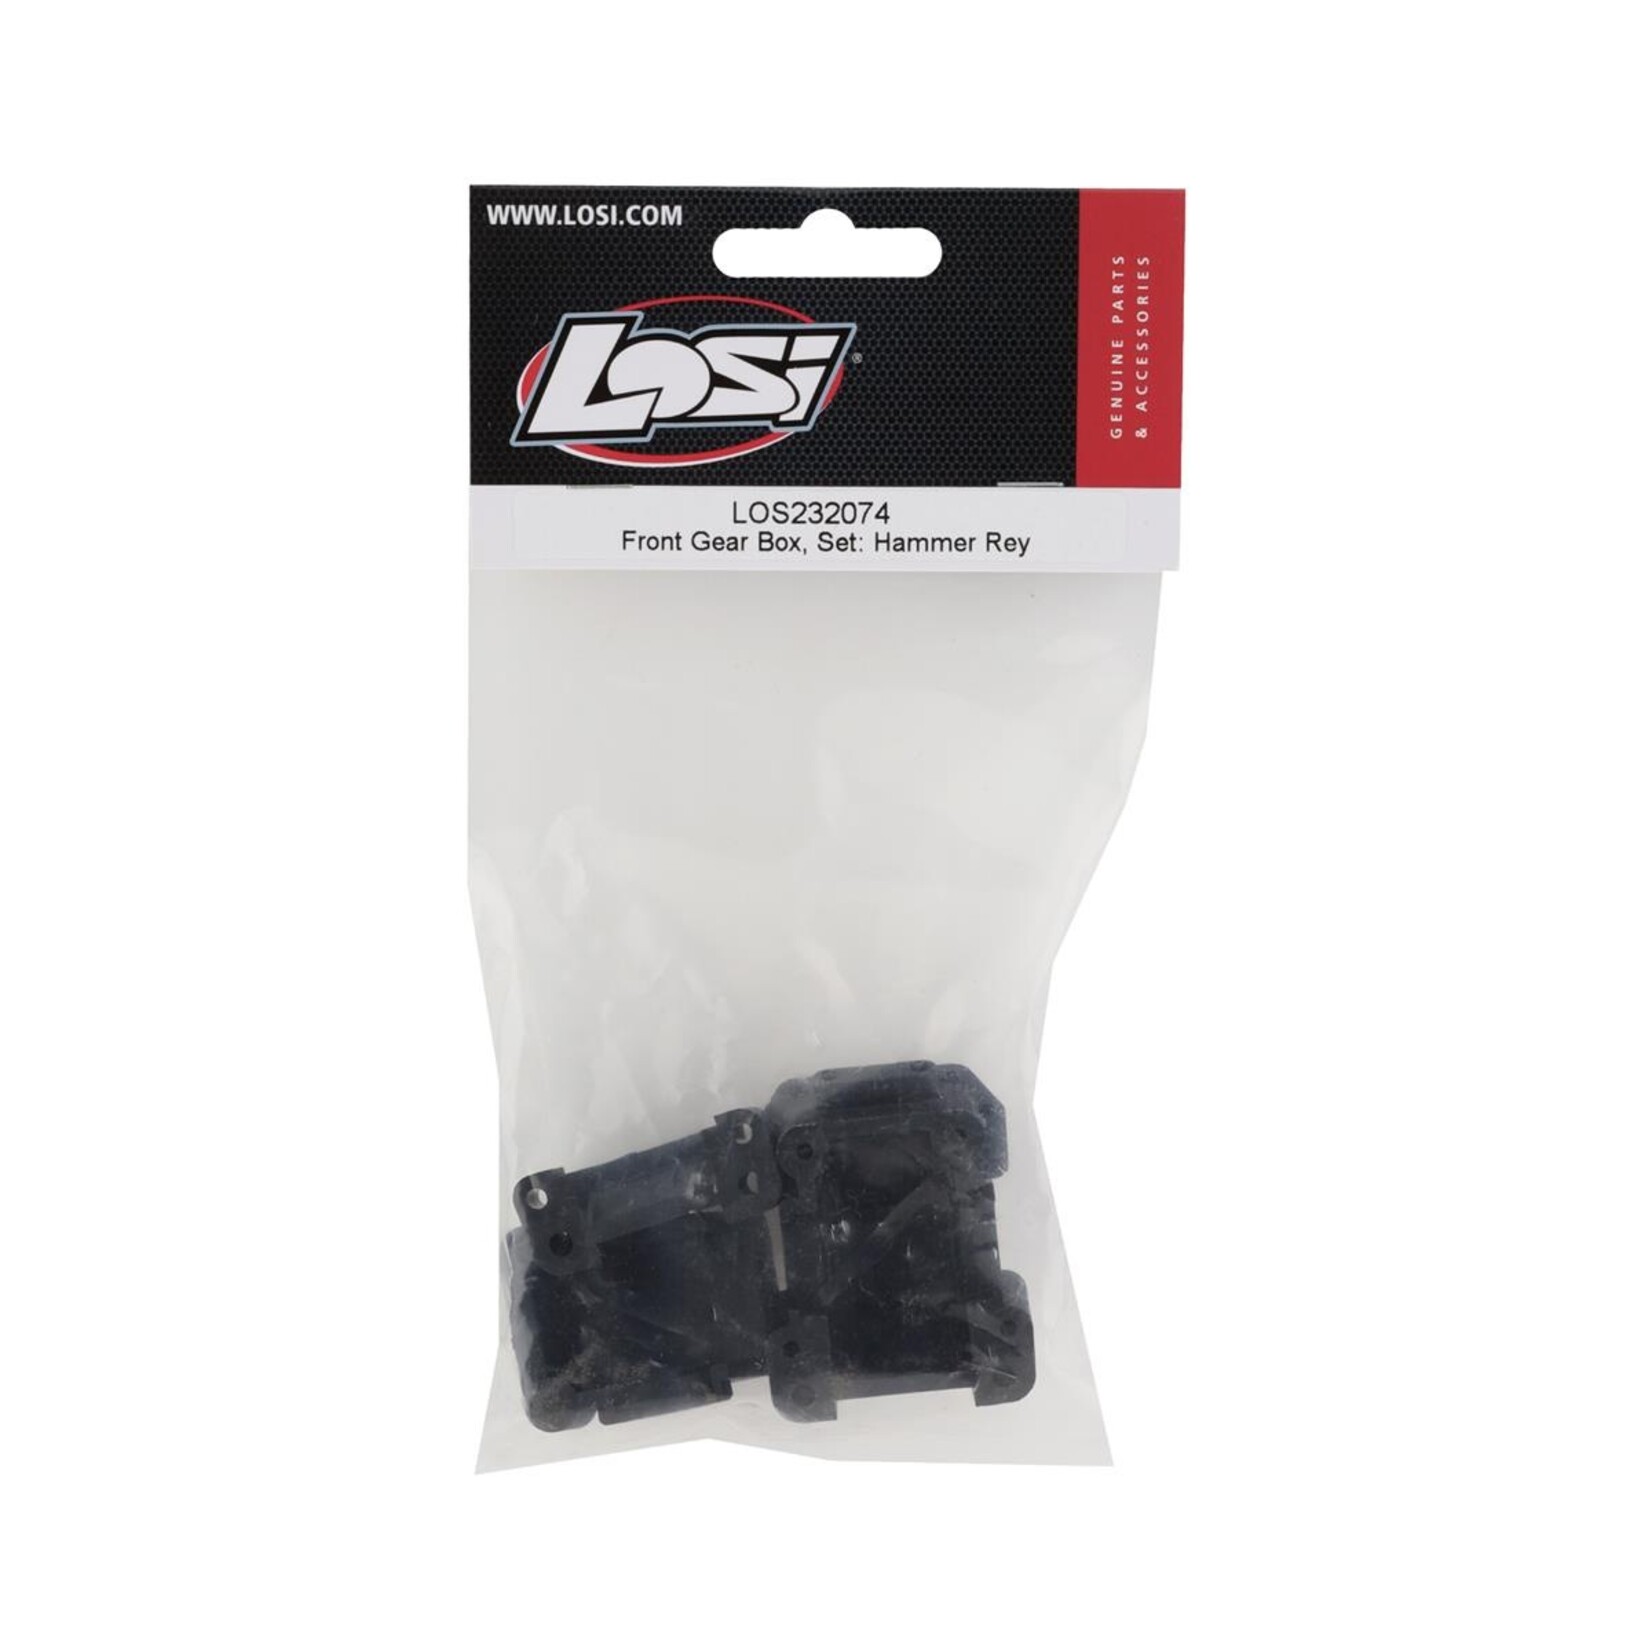 Losi Losi Hammer Rey Front Gear Box Set #LOS232074